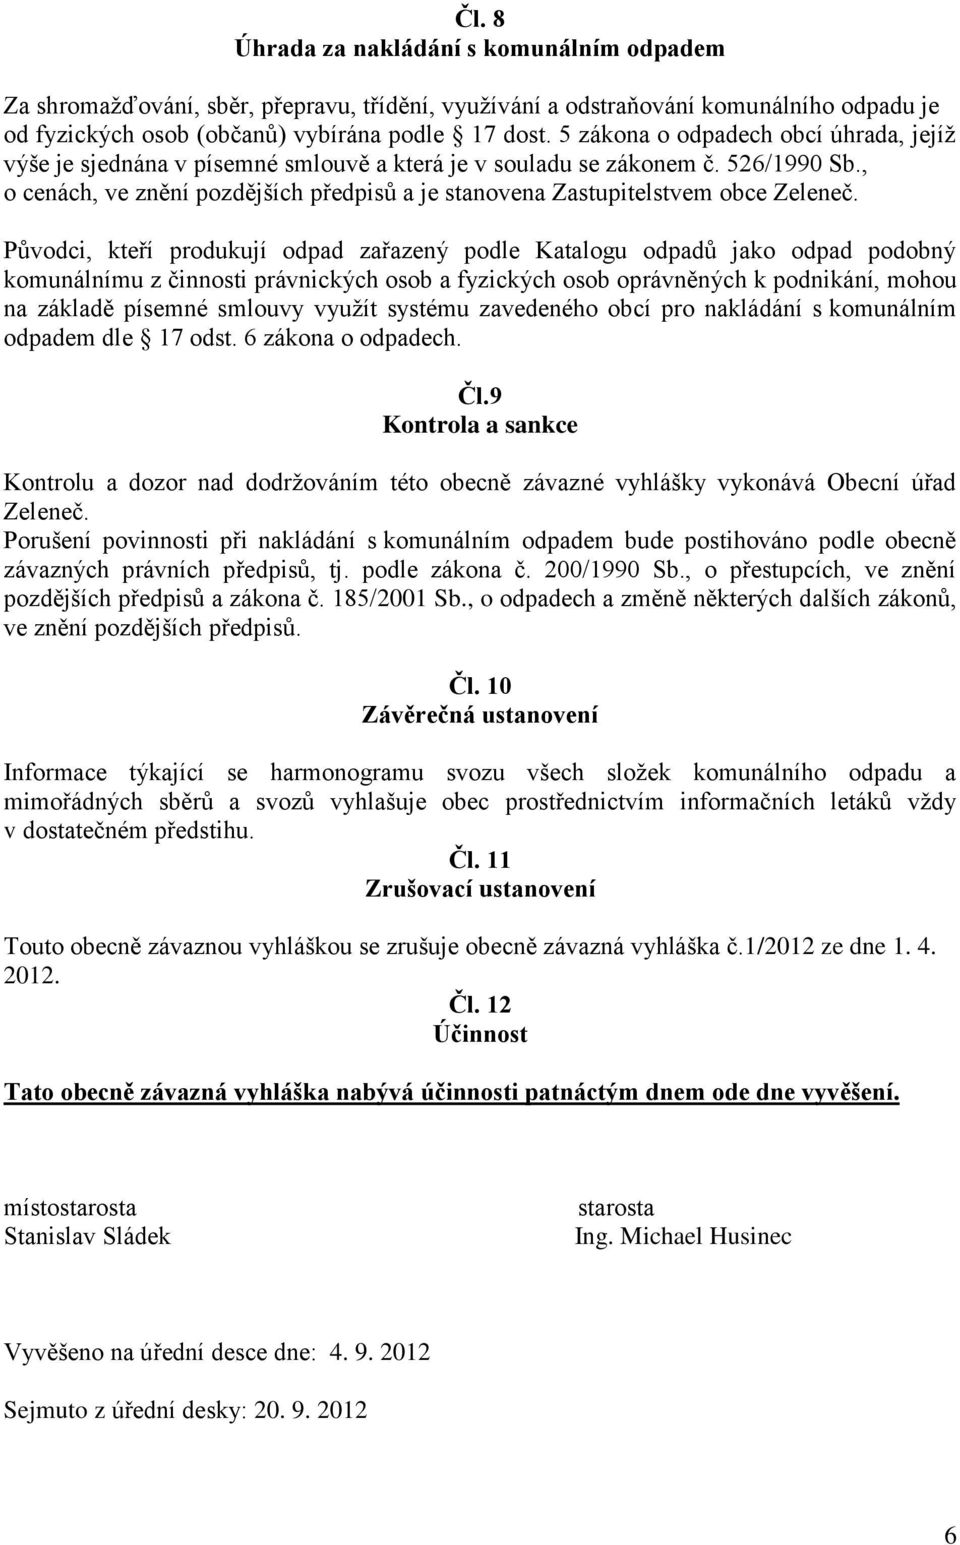 , o cenách, ve znění pozdějších předpisů a je stanovena Zastupitelstvem obce Zeleneč.